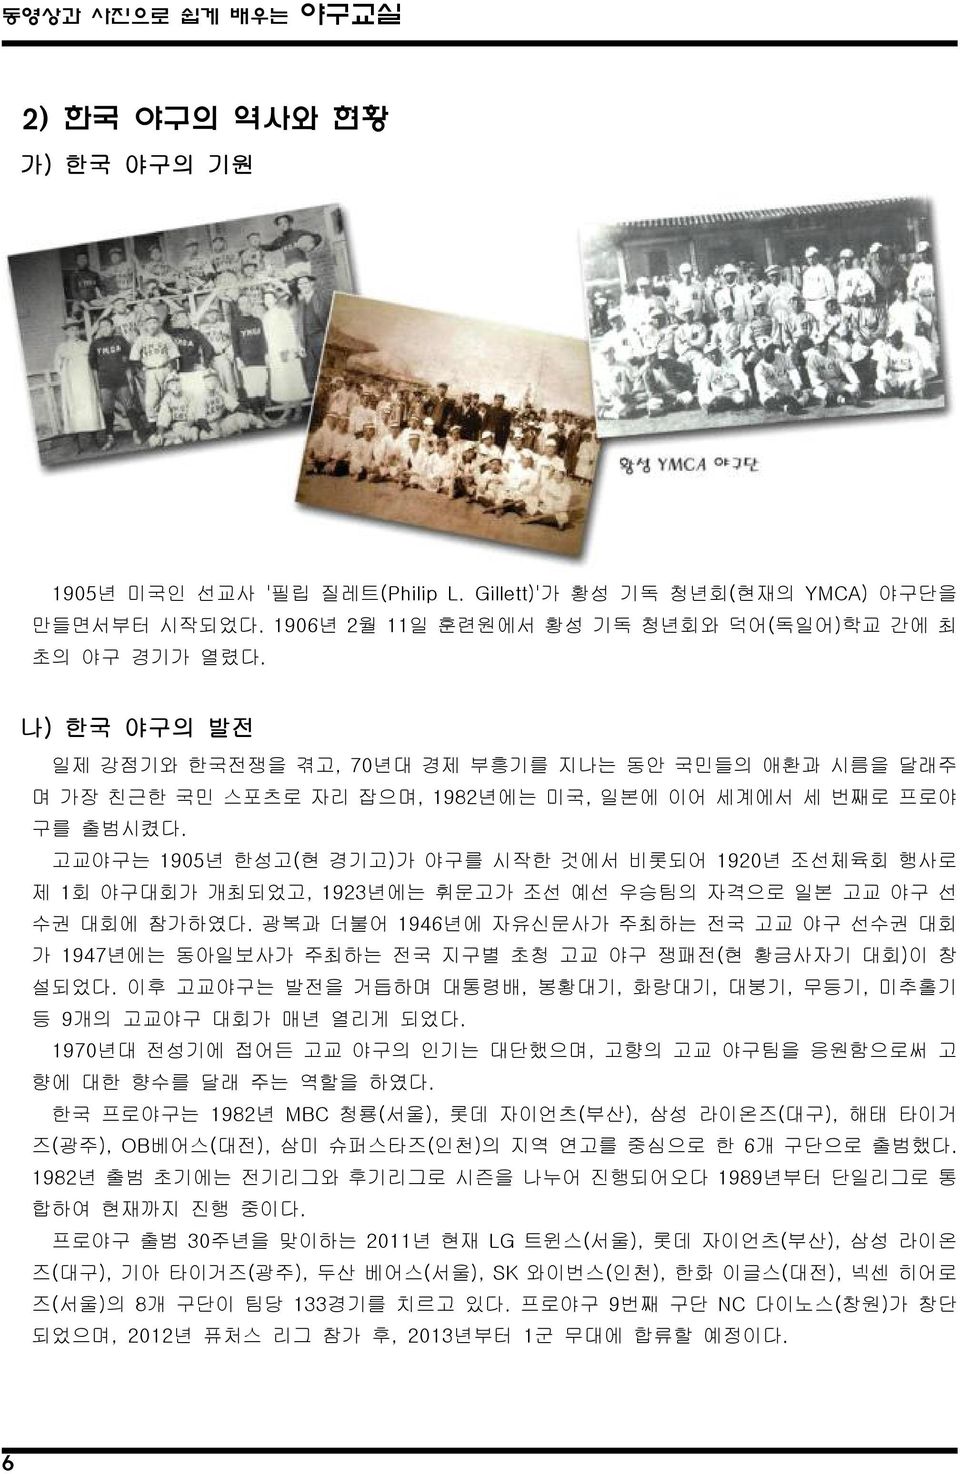 고교야구는 1905년 한성고(현 경기고)가 야구를 시작한 것에서 비롯되어 1920년 조선체육회 행사로 제 1회 야구대회가 개최되었고, 1923년에는 휘문고가 조선 예선 우승팀의 자격으로 일본 고교 야구 선 수권 대회에 참가하였다.